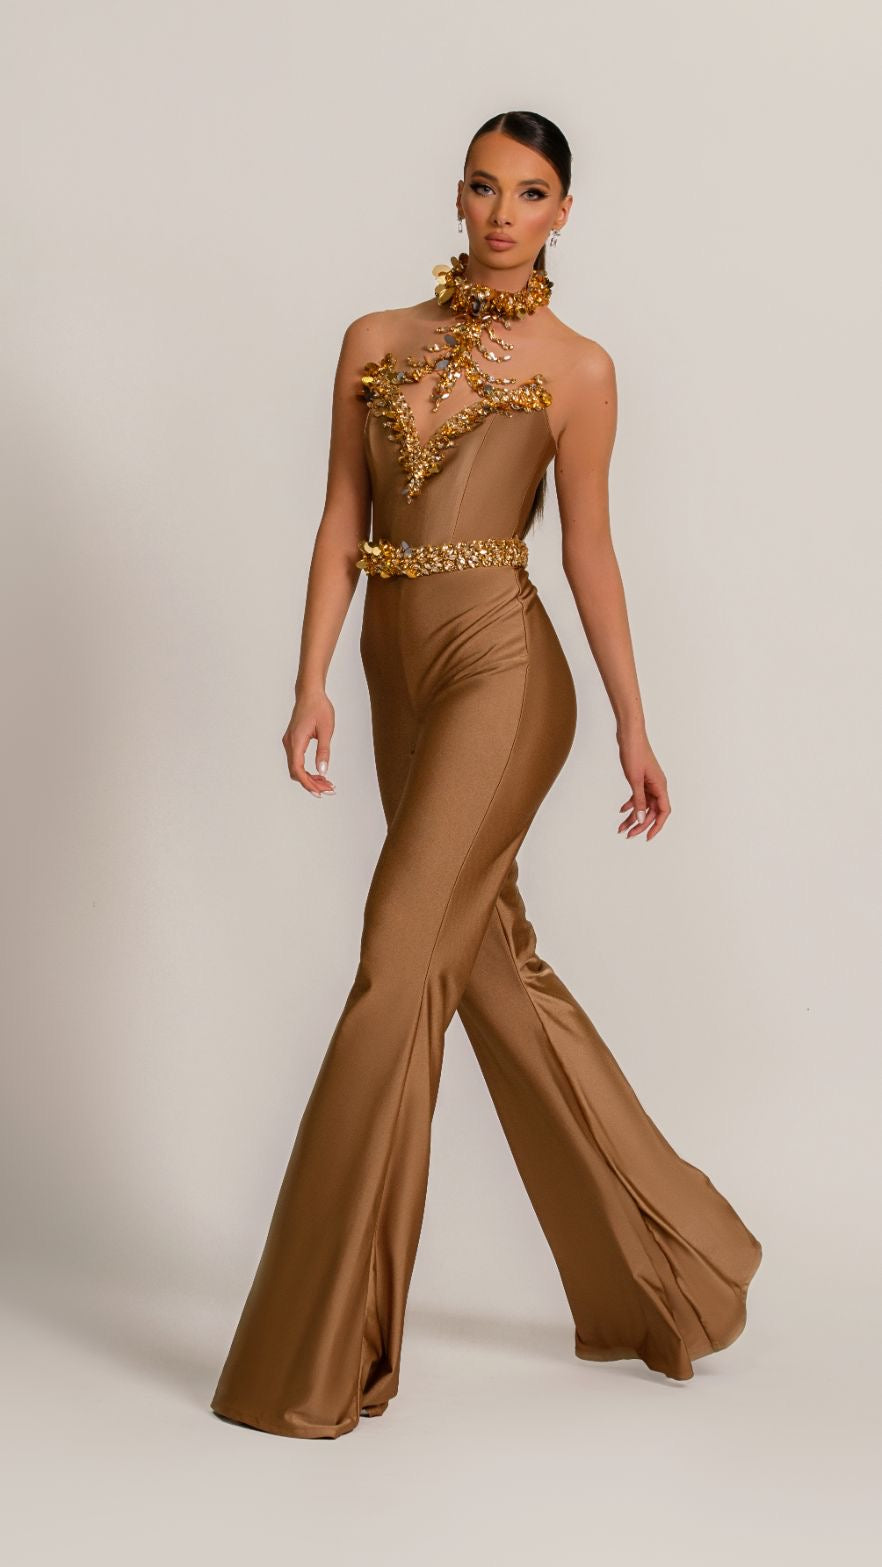 Brianna Beautiful Golden Evening Dress